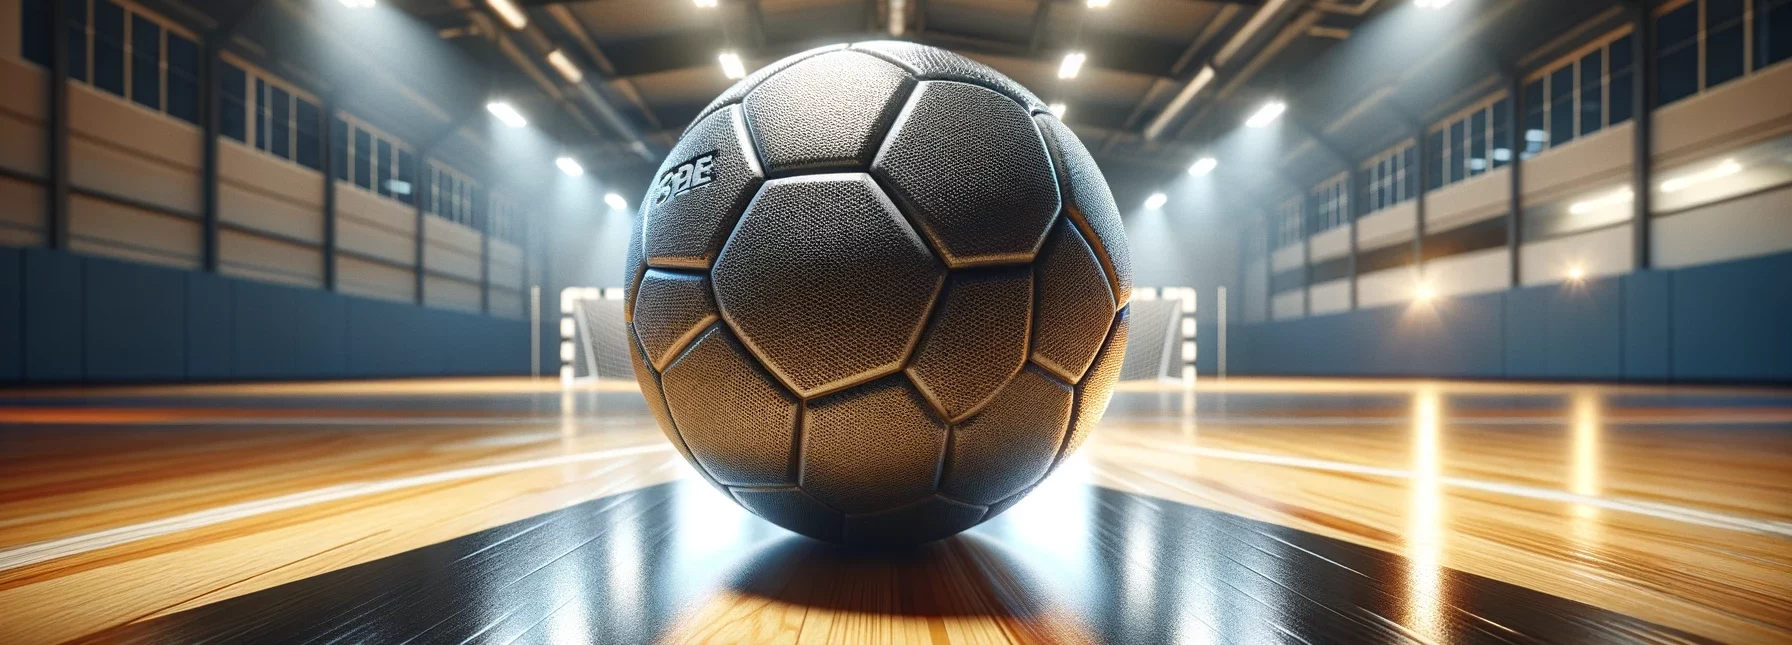 Ein Handball, der auf einem hölzernen Turnhallenboden liegt, dessen glänzende, polierte Oberfläche den Ball reflektiert.